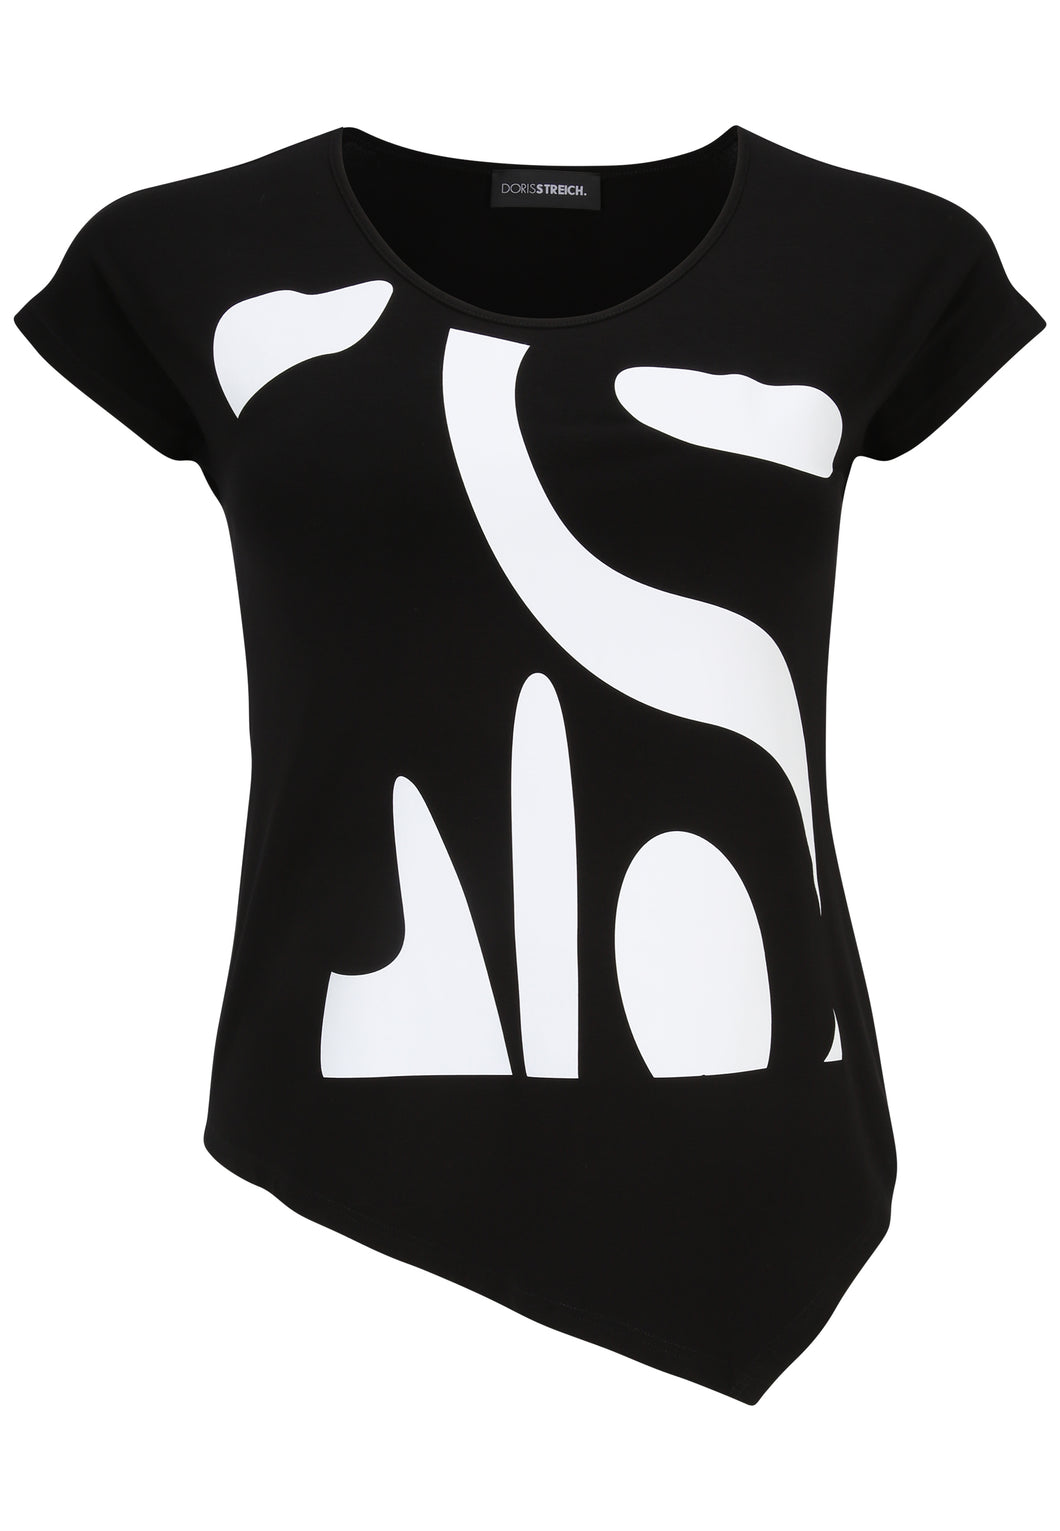 Doris Streich Shirt, schwarz-weiß kurzarm Gr 44-56